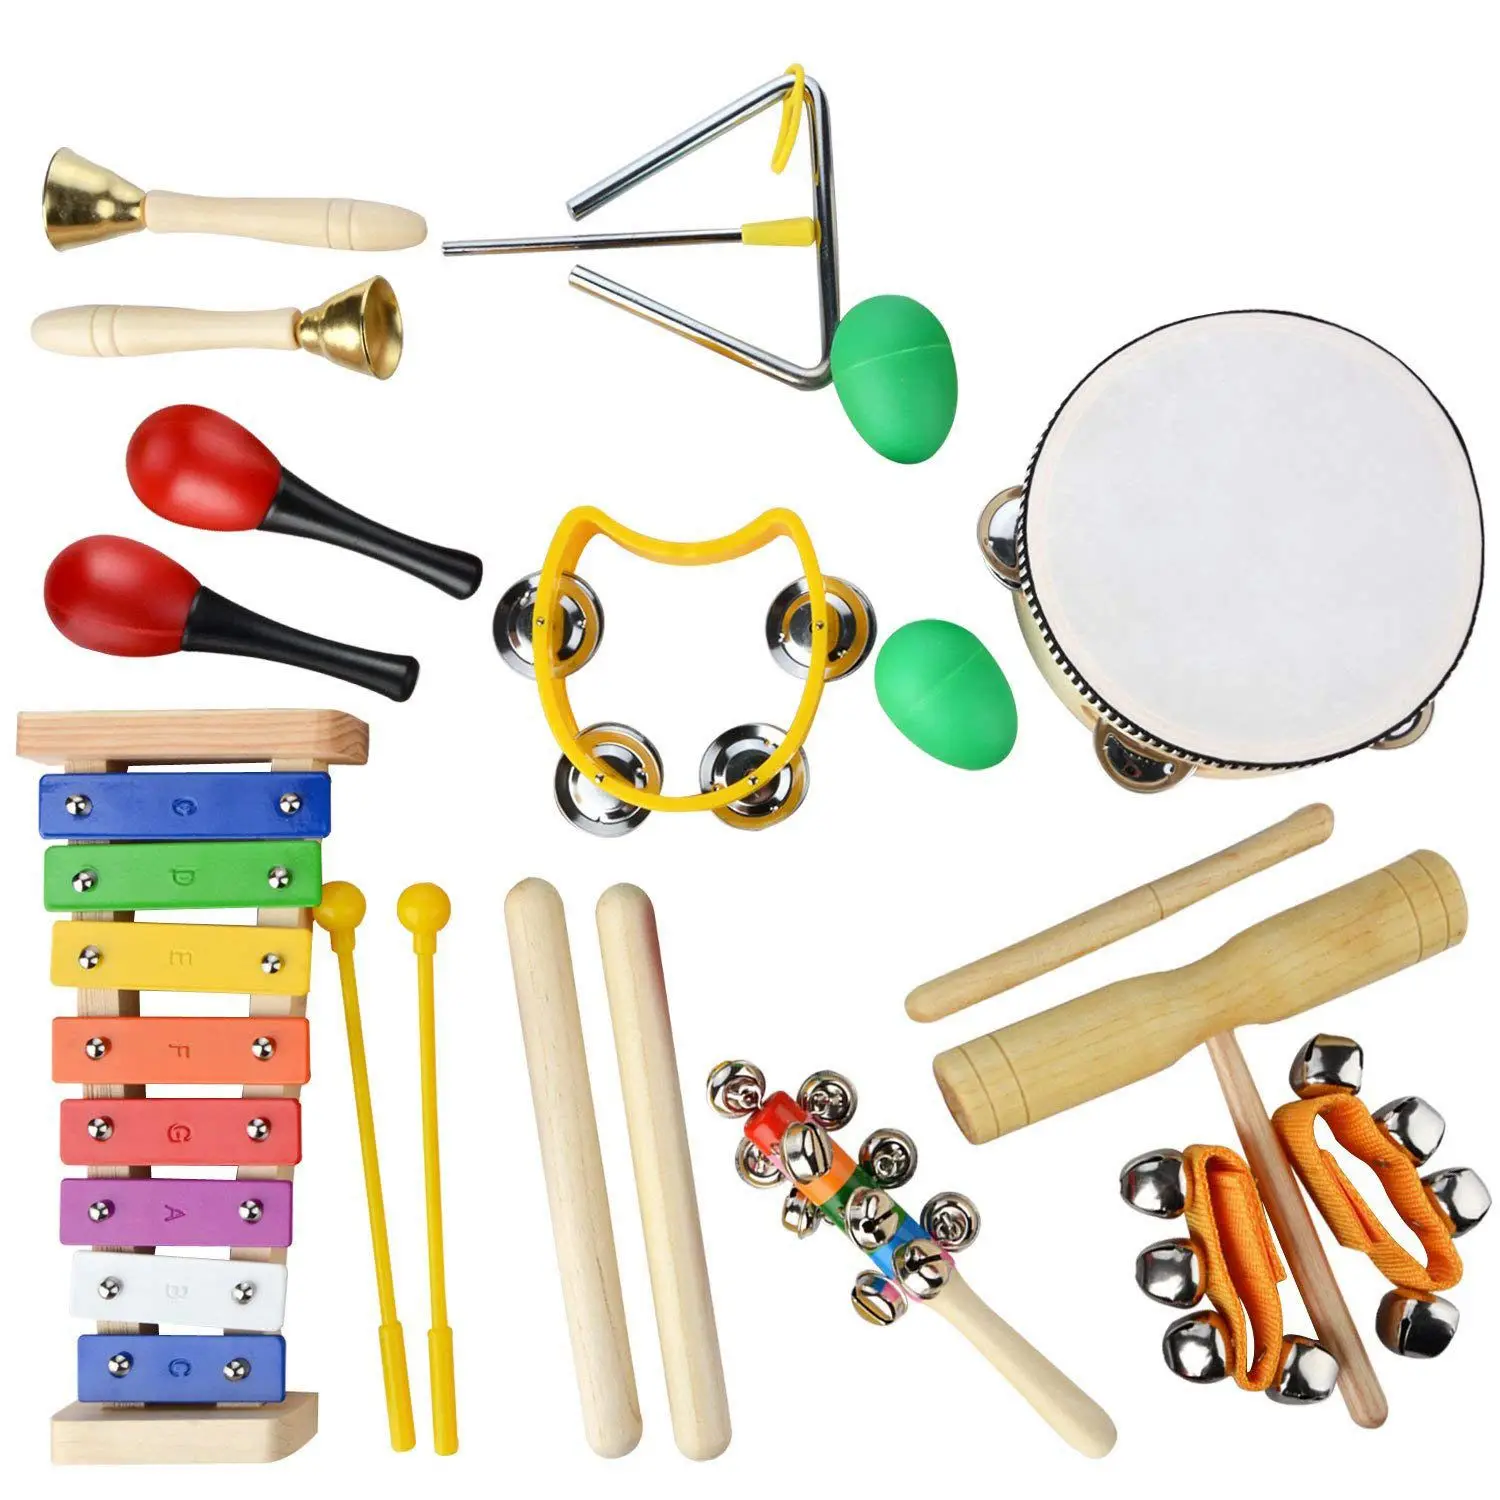 HOT-Musical набор инструментов, 20 шт. деревянная перкуссия Orff ритм и Музыка образование группа набор весело малышей игрушки; лучший подарок для малыша